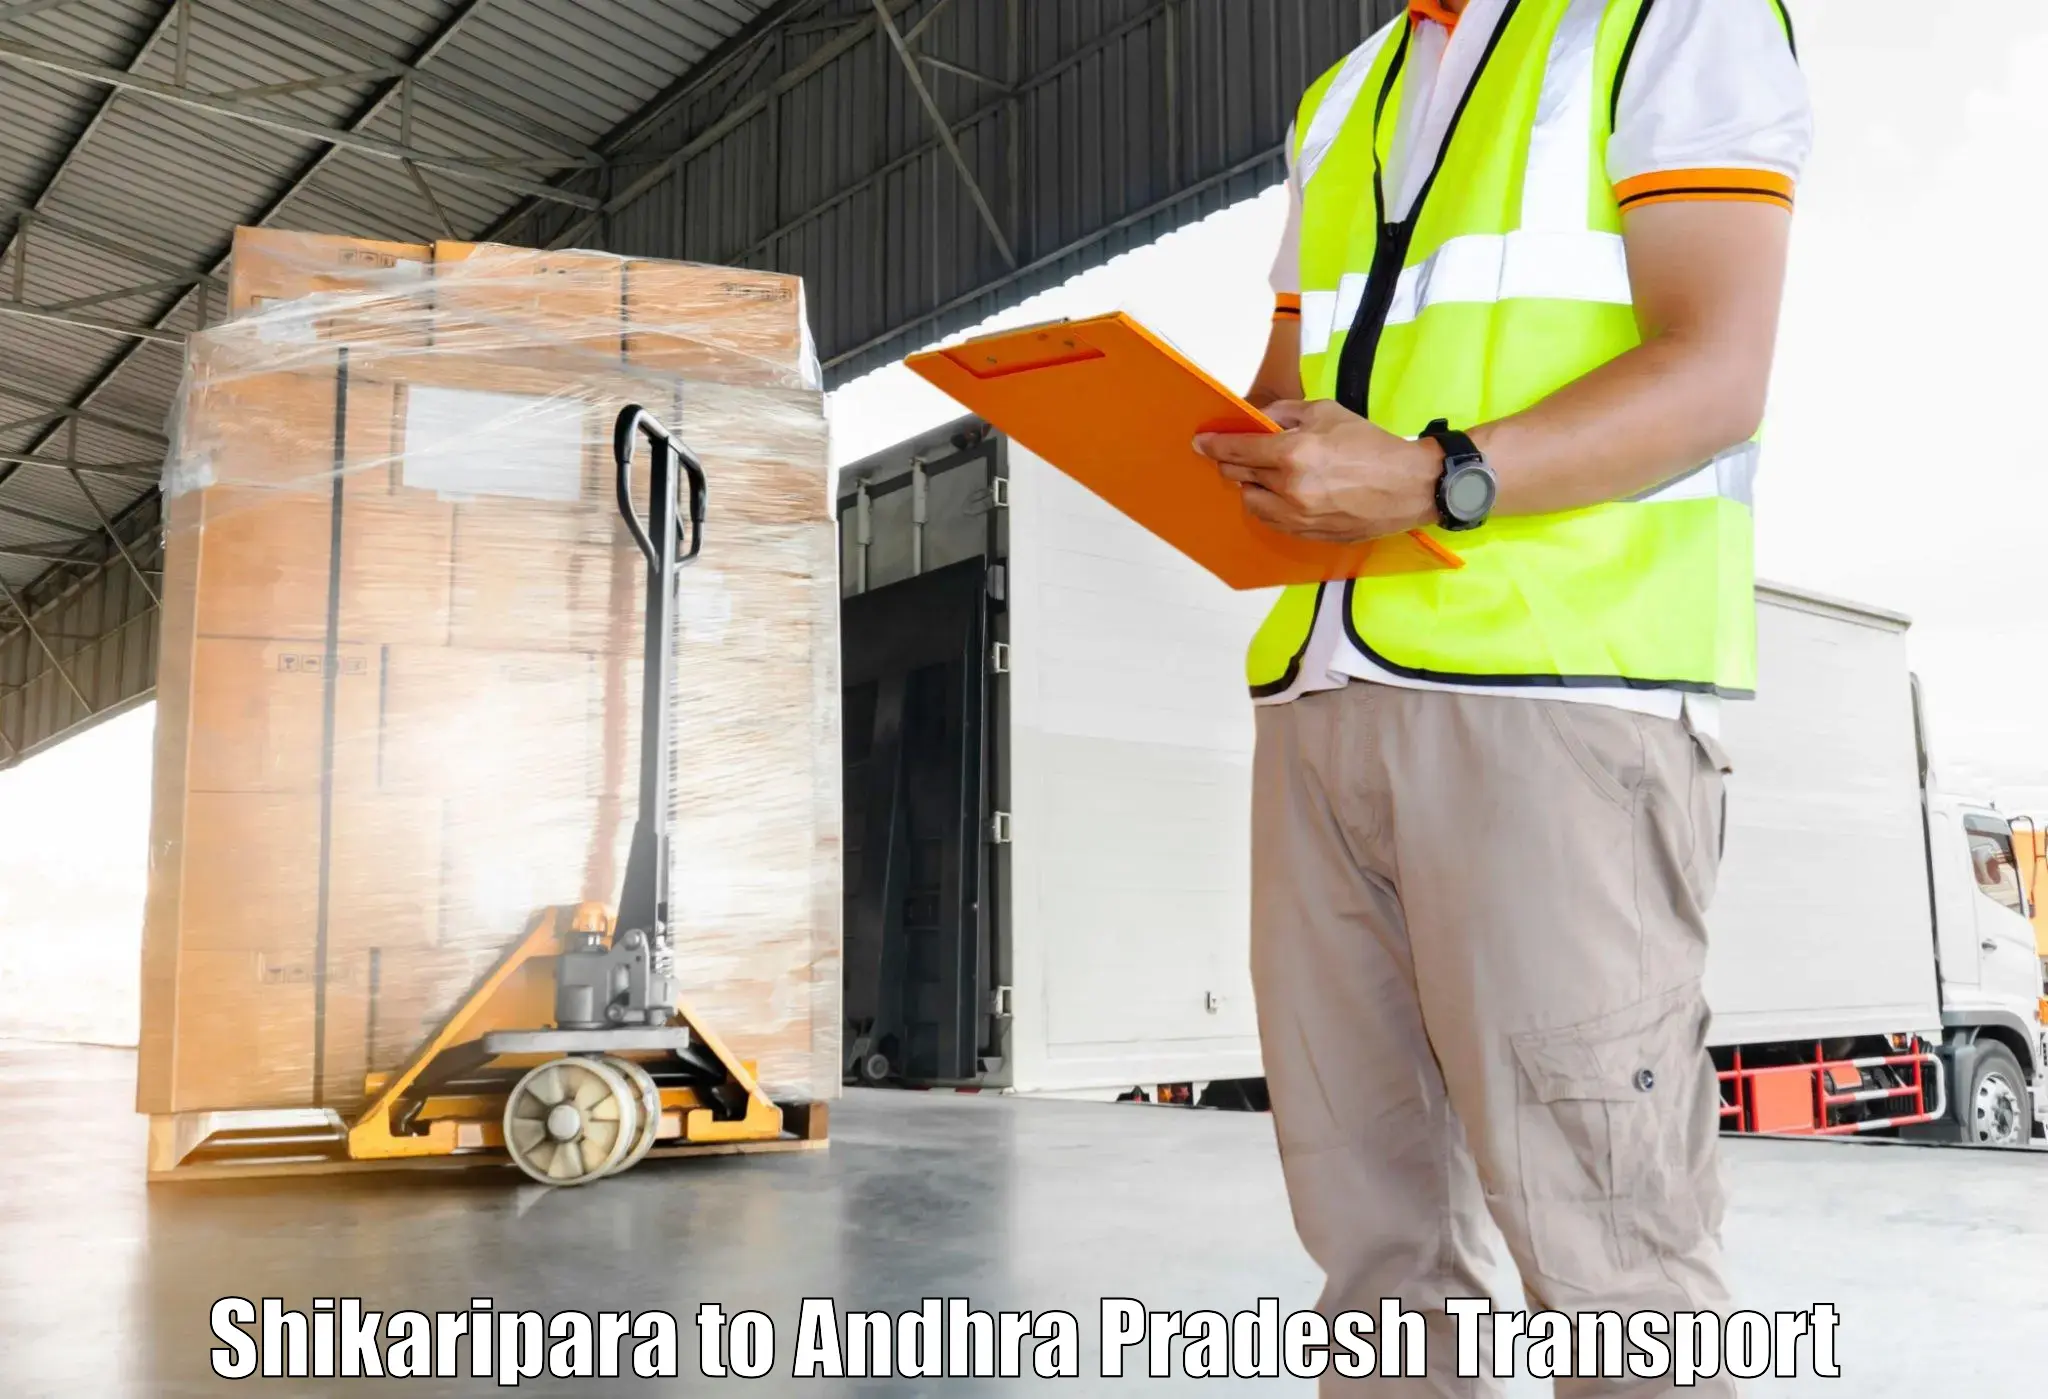 Two wheeler parcel service Shikaripara to Kuppam